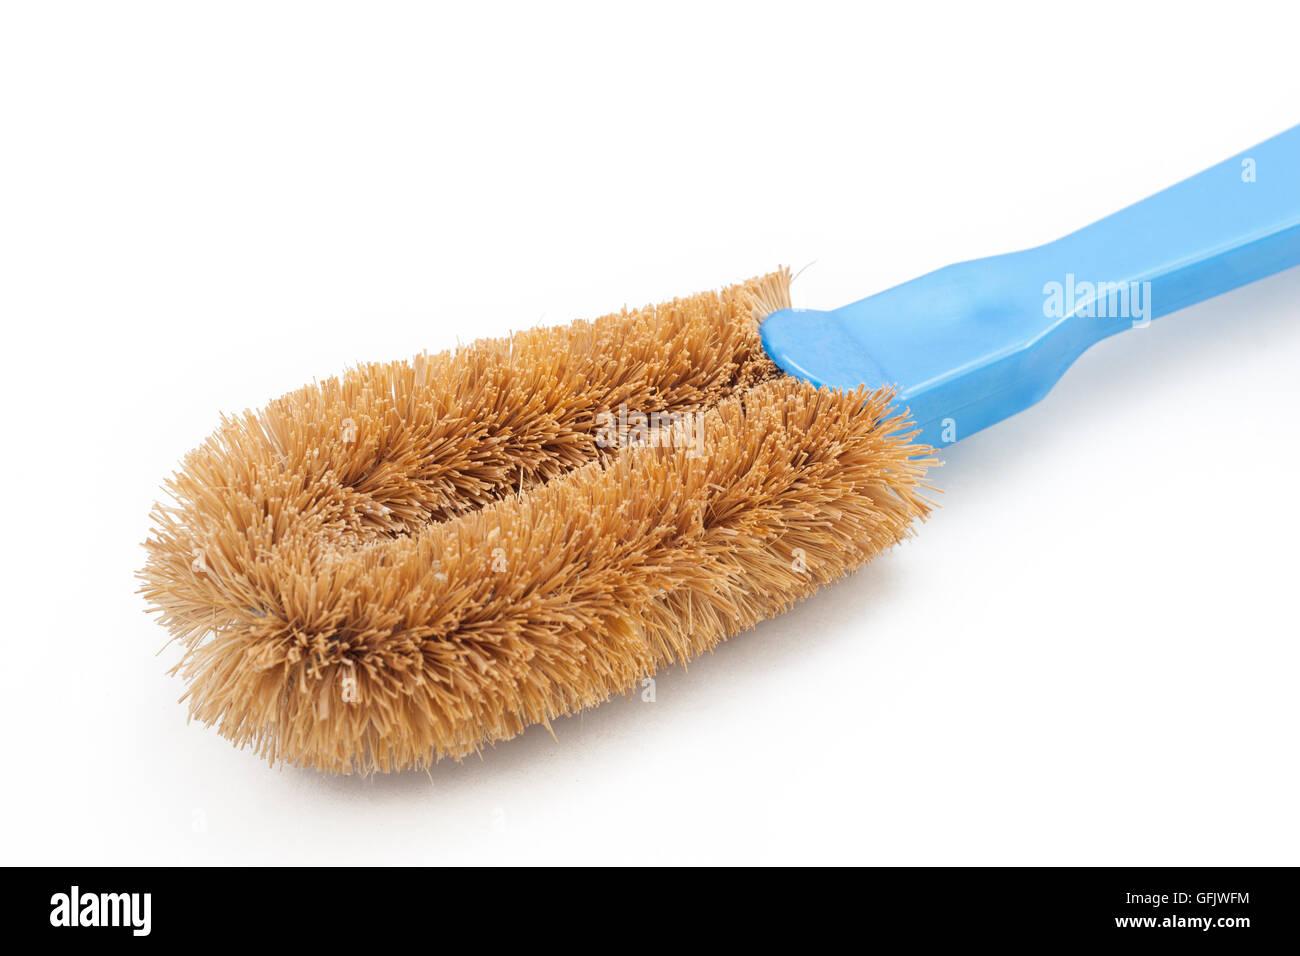 A scrub brush on white isolated background Stock Photo